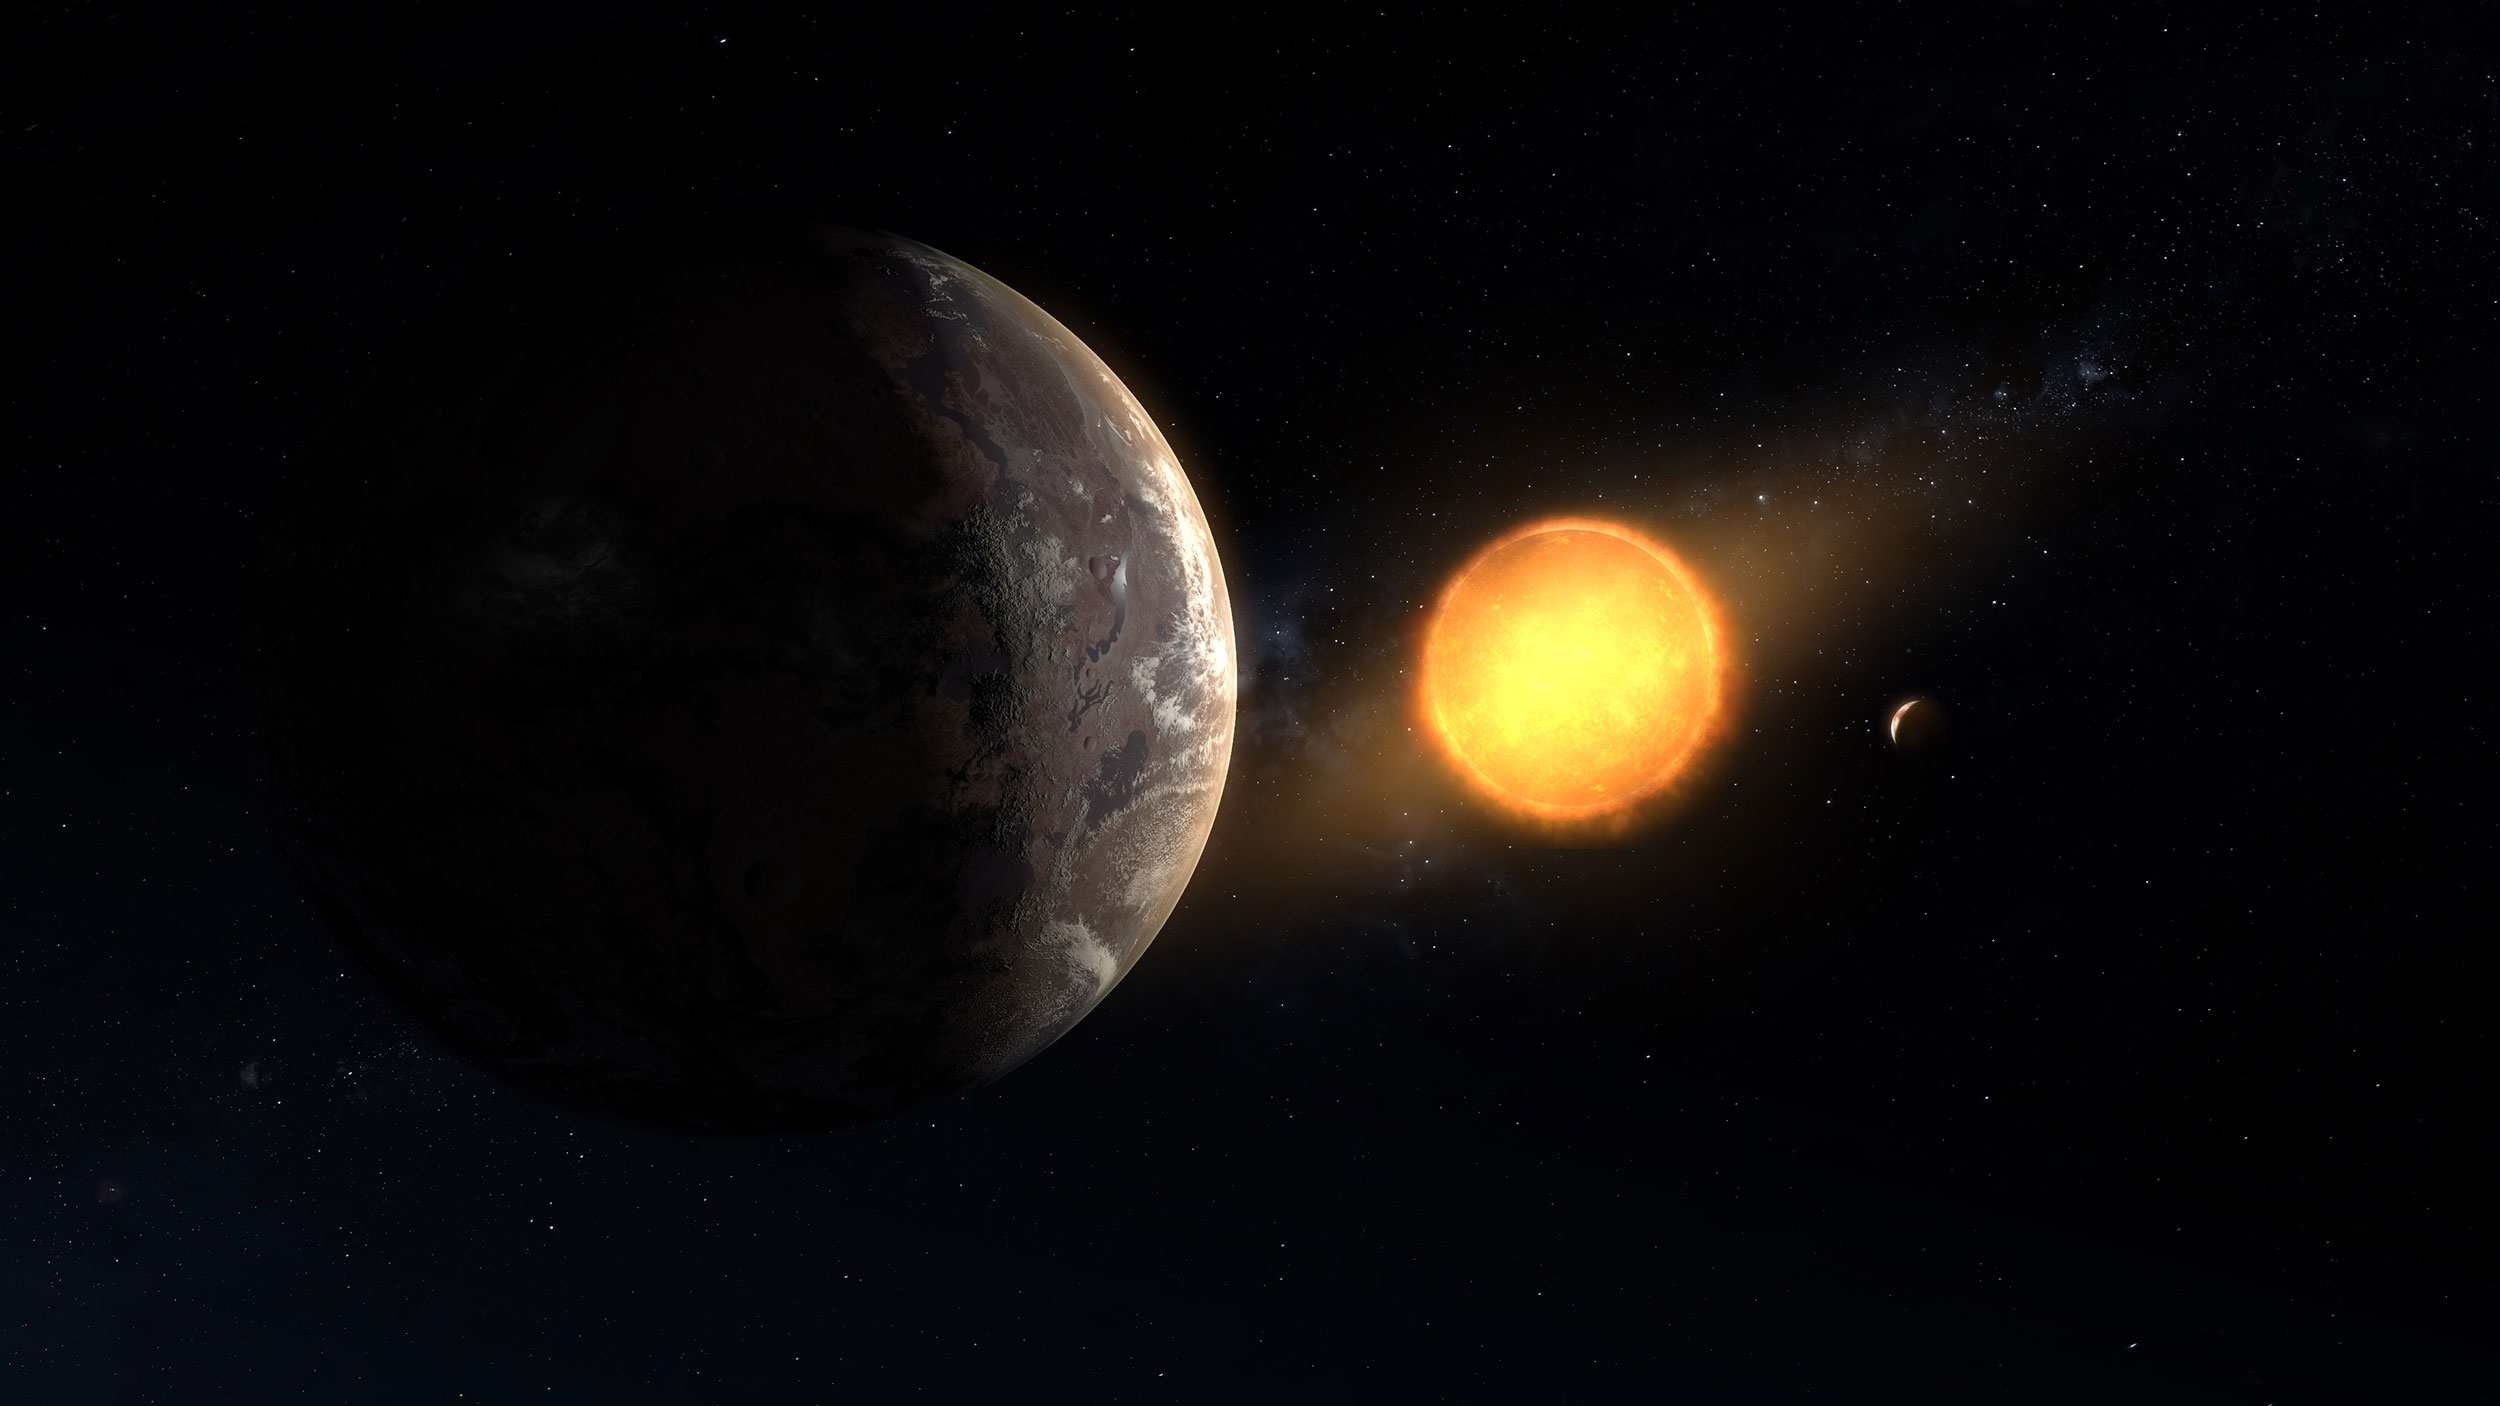 Concepção artística do planeta Kepler-1649c e sua estrela